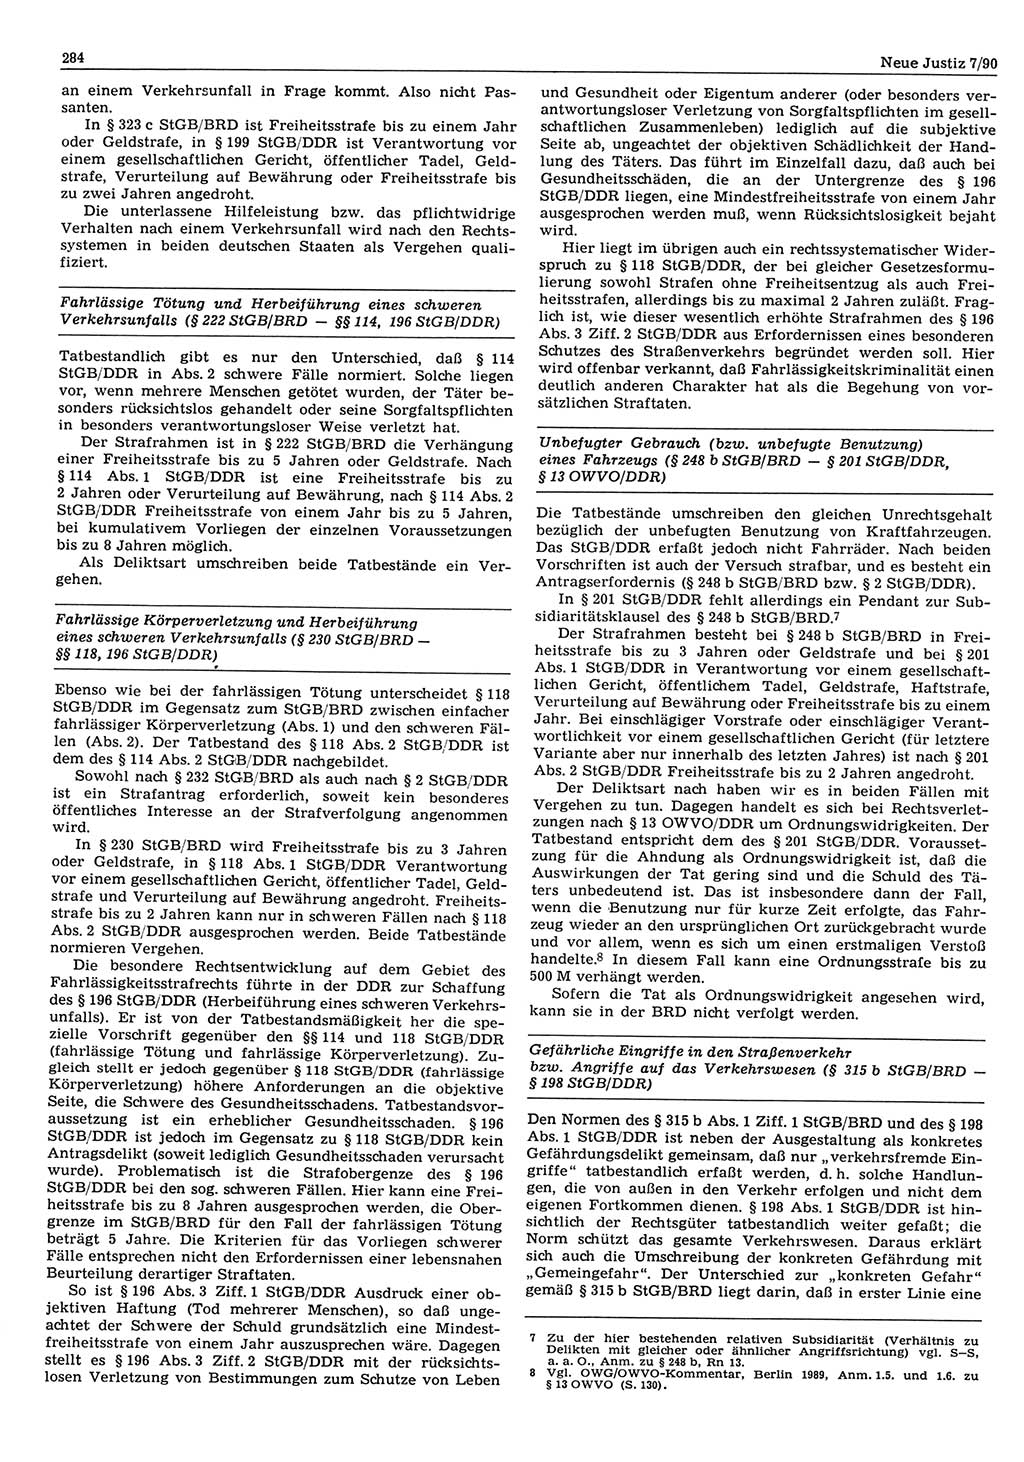 Neue Justiz (NJ), Zeitschrift für Rechtsetzung und Rechtsanwendung [Deutsche Demokratische Republik (DDR)], 44. Jahrgang 1990, Seite 284 (NJ DDR 1990, S. 284)